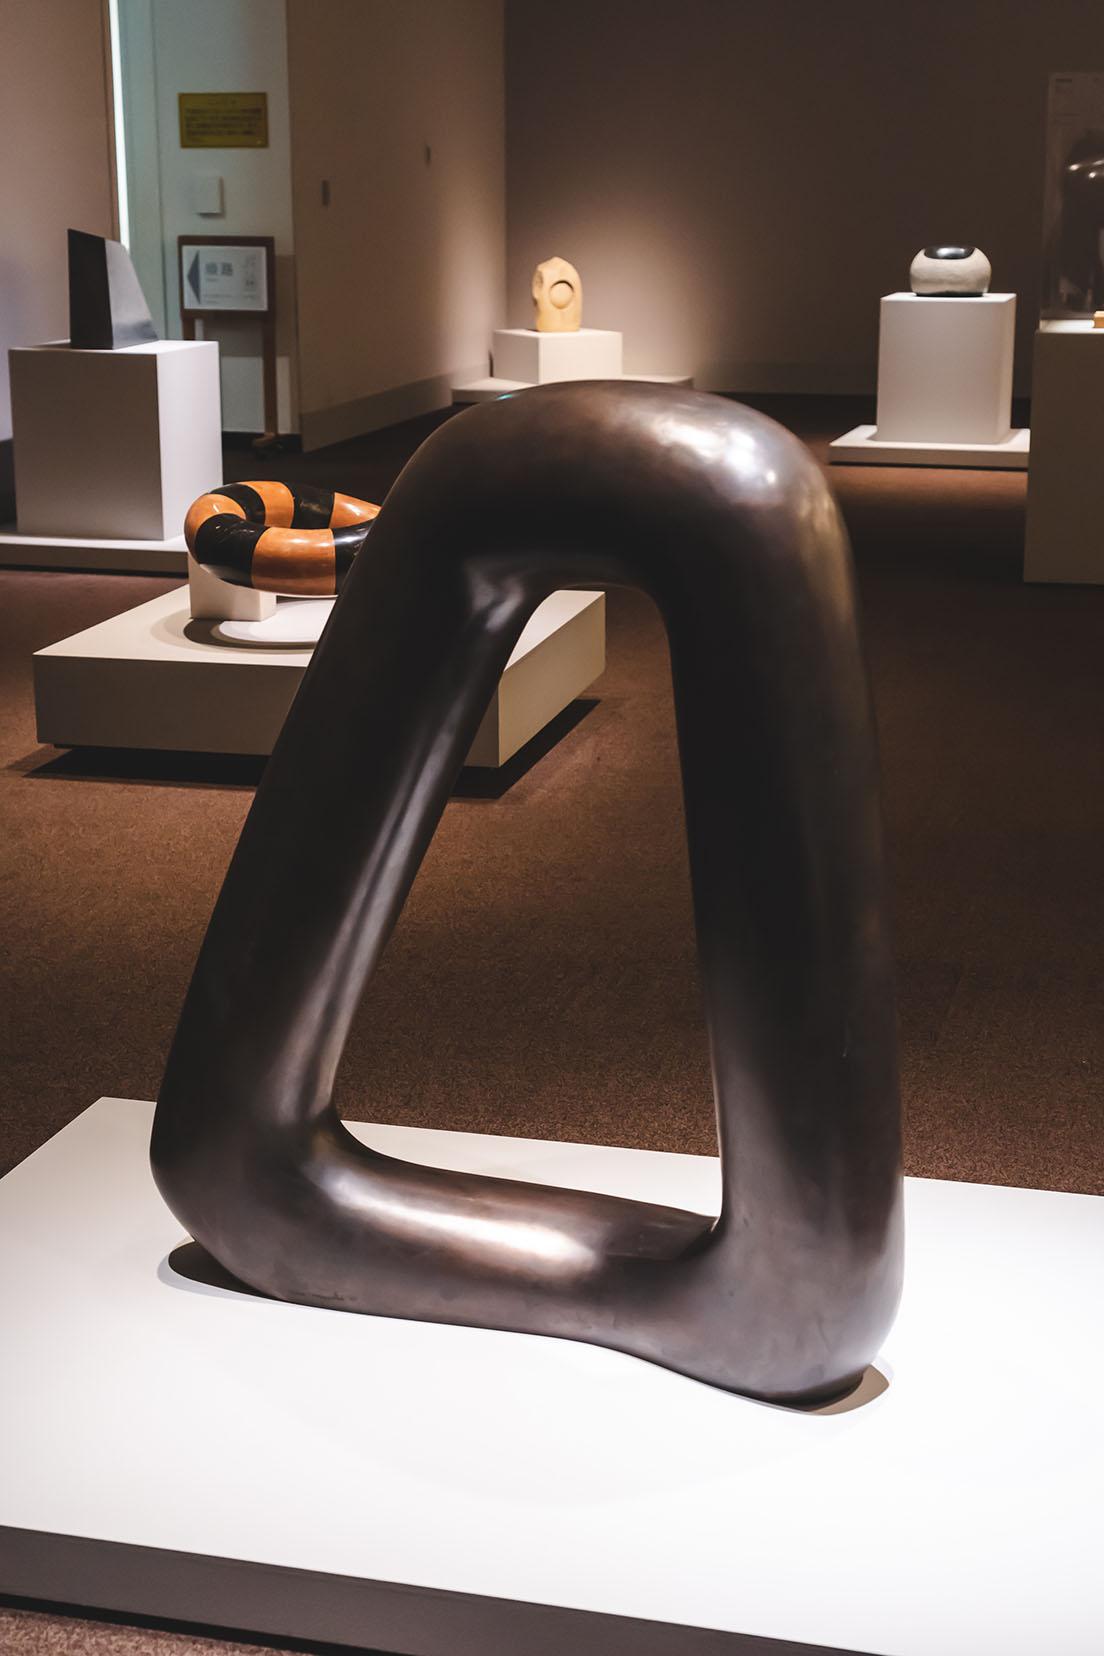 《ヴォイド》（1971年、1980年鋳造、和歌山県立近代美術館）。タイトルは「空間」「無」といった意味。無に森羅万象を見出す仏教の思想も思わせる。　(c)2021 The Isamu Noguchi Foundation and Garden Museum / ARS, NY / JASPAR, Tokyo, E3713